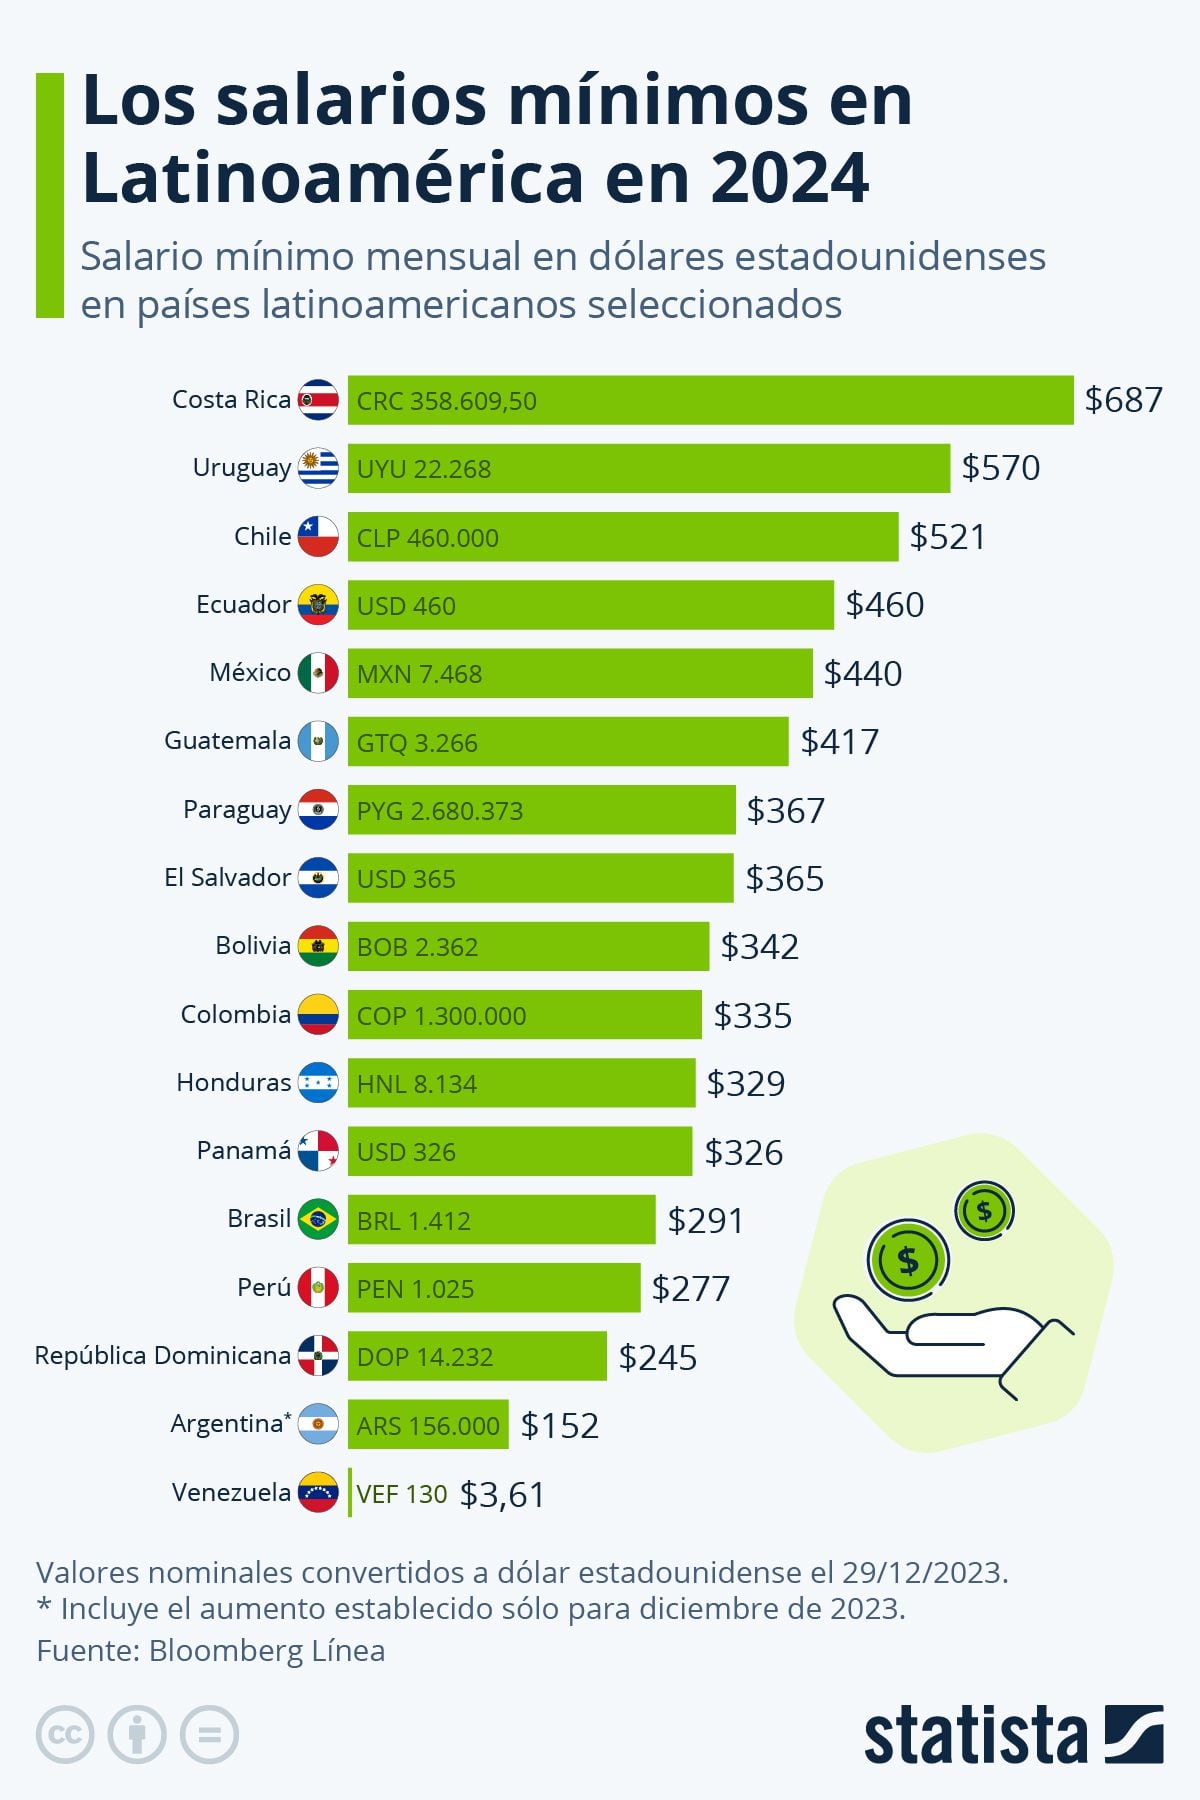 Salarios mínimos en Latinoamérica 2024